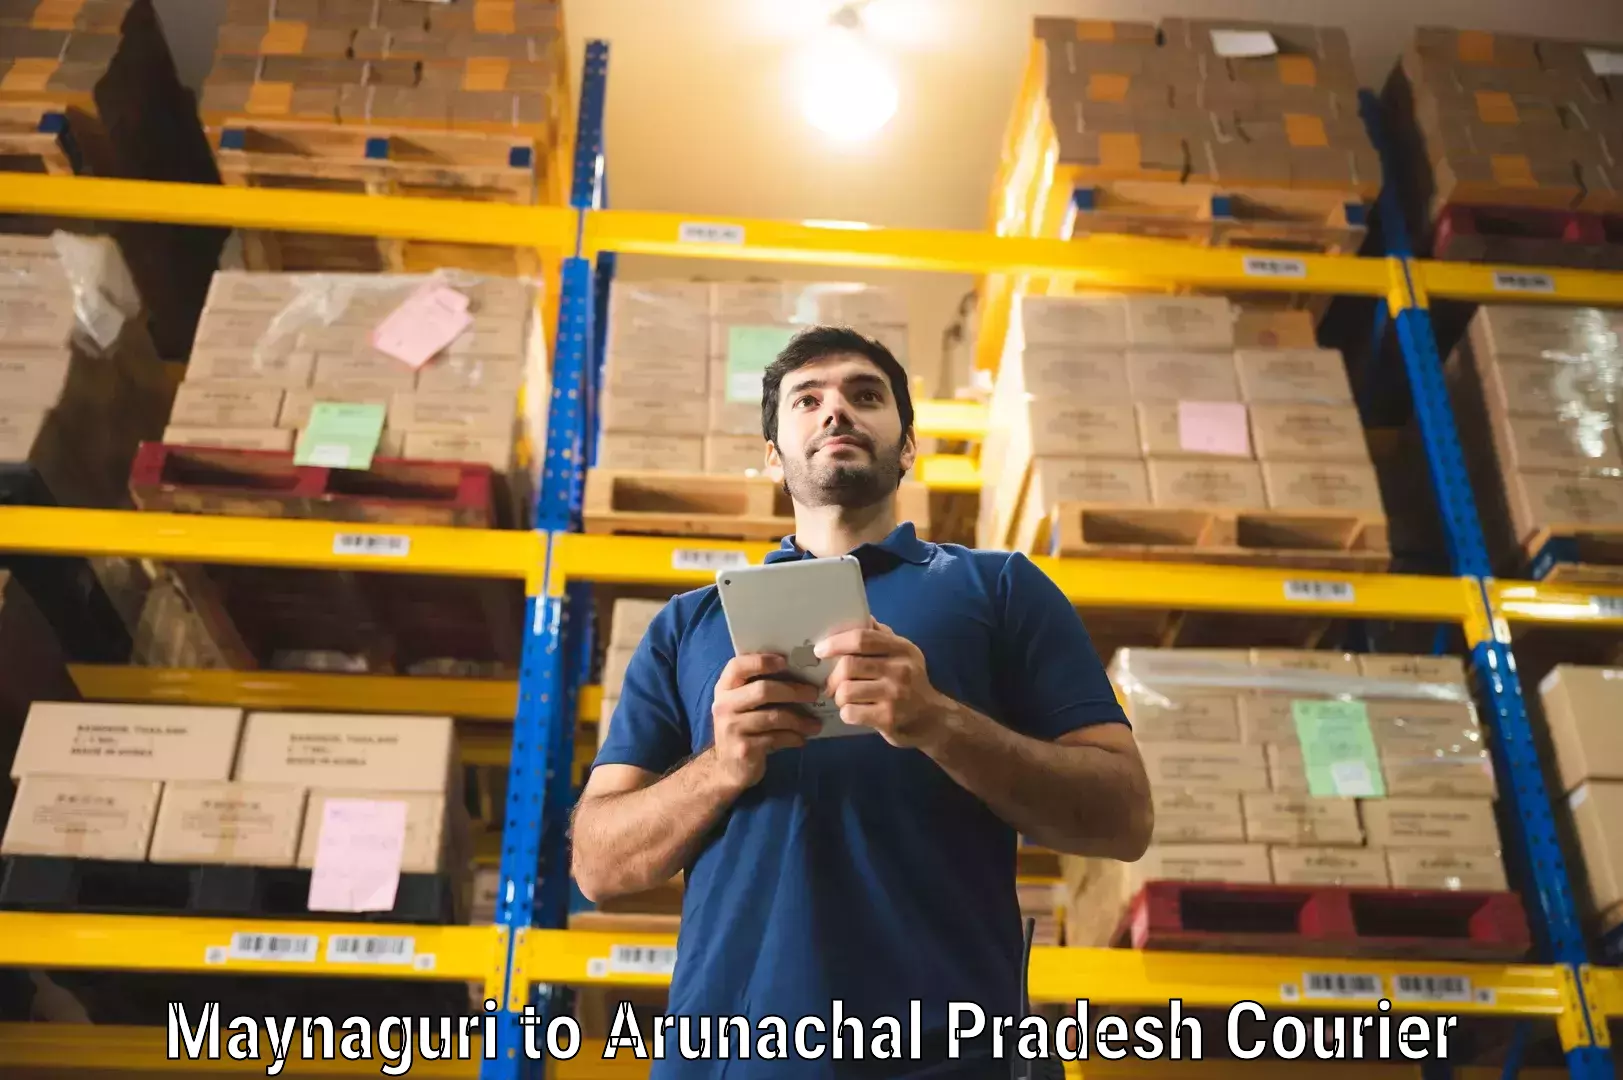 24/7 courier service Maynaguri to Arunachal Pradesh